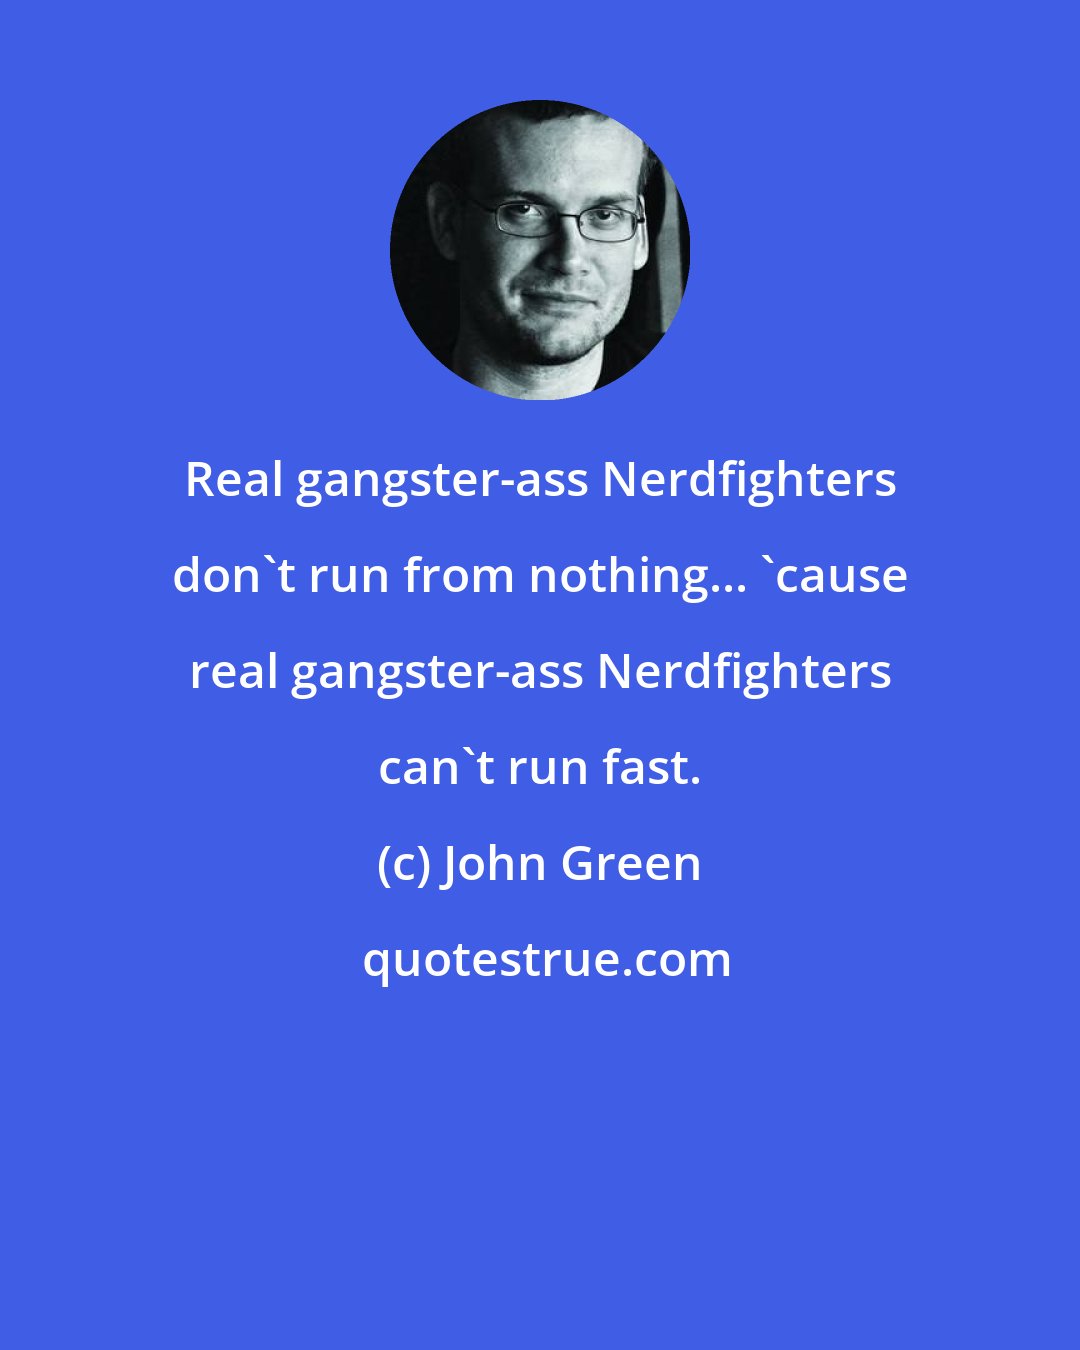 John Green: Real gangster-ass Nerdfighters don't run from nothing... 'cause real gangster-ass Nerdfighters can't run fast.